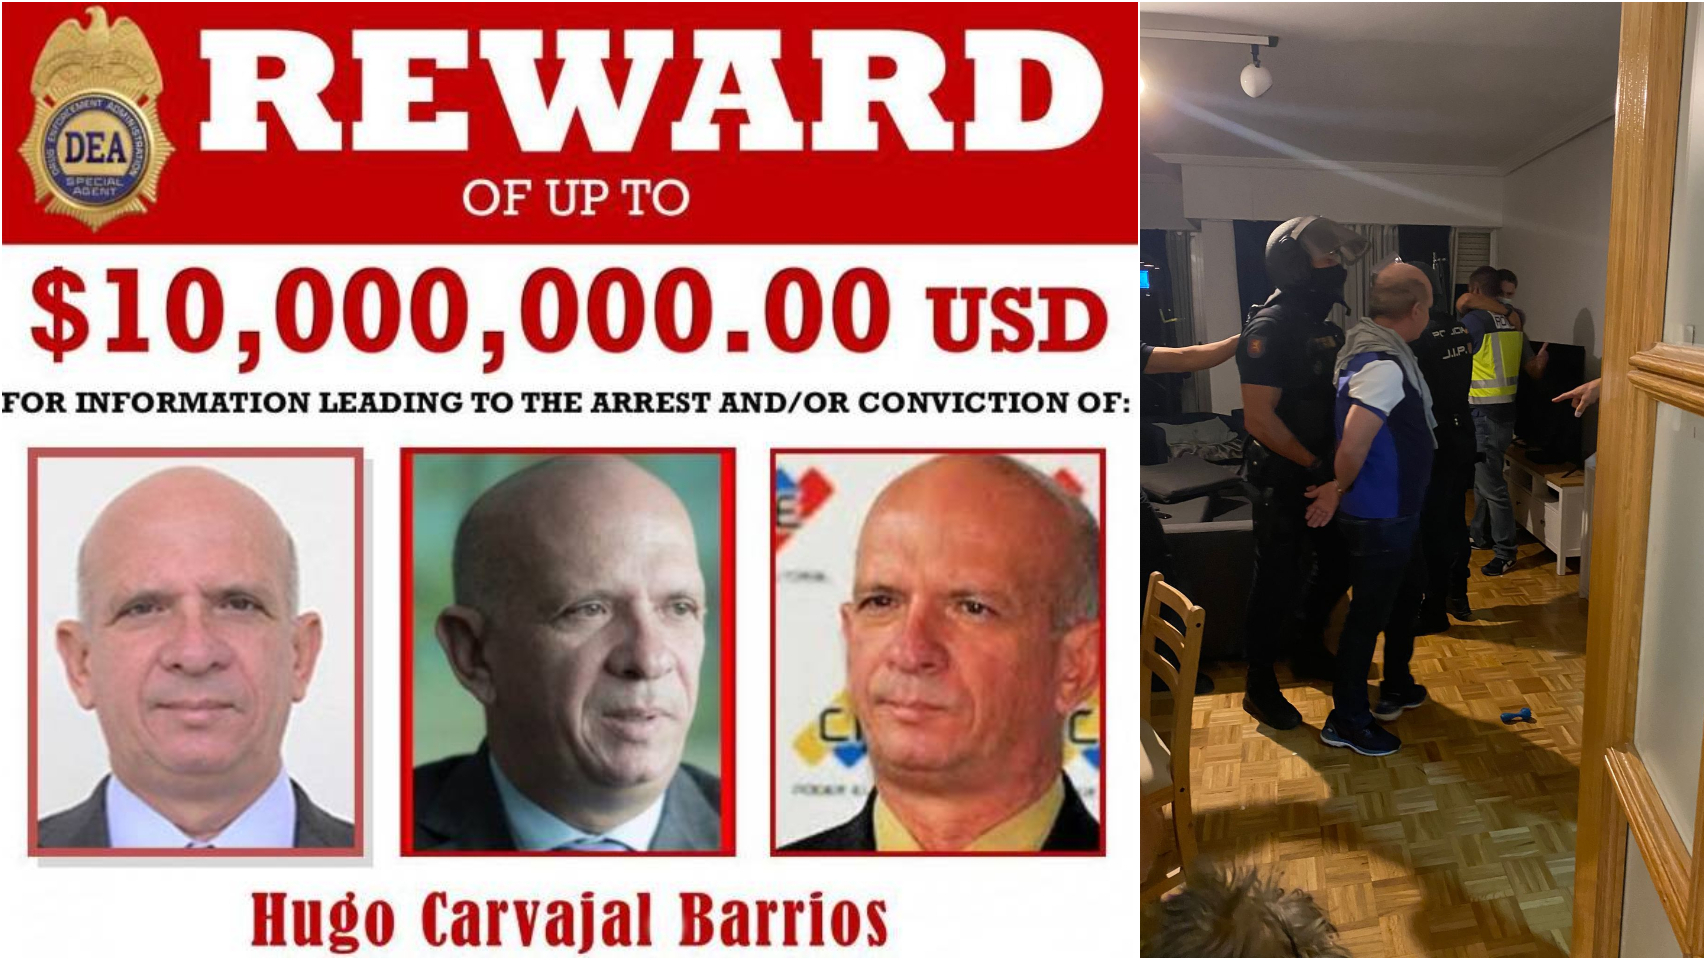 Cartel de la DEA ofreciendo 10 millones de dólares por su detención. A la derecha, Carvajal ya apresado.